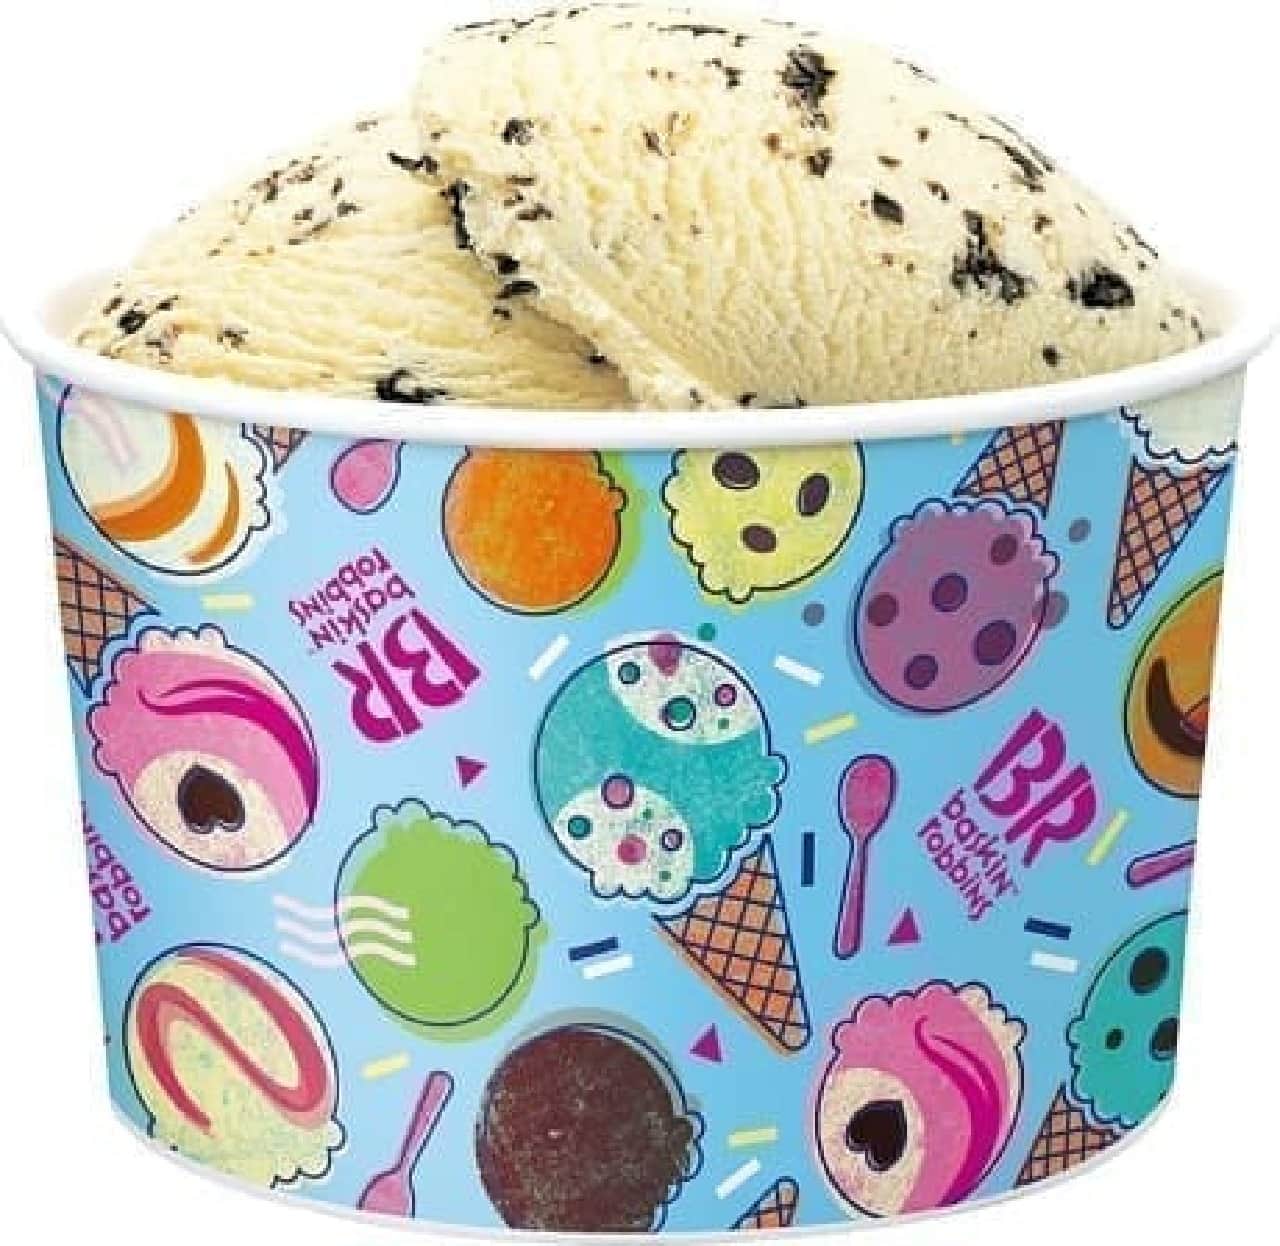 サーティワン アイスクリームの「スーパービッグカップ」